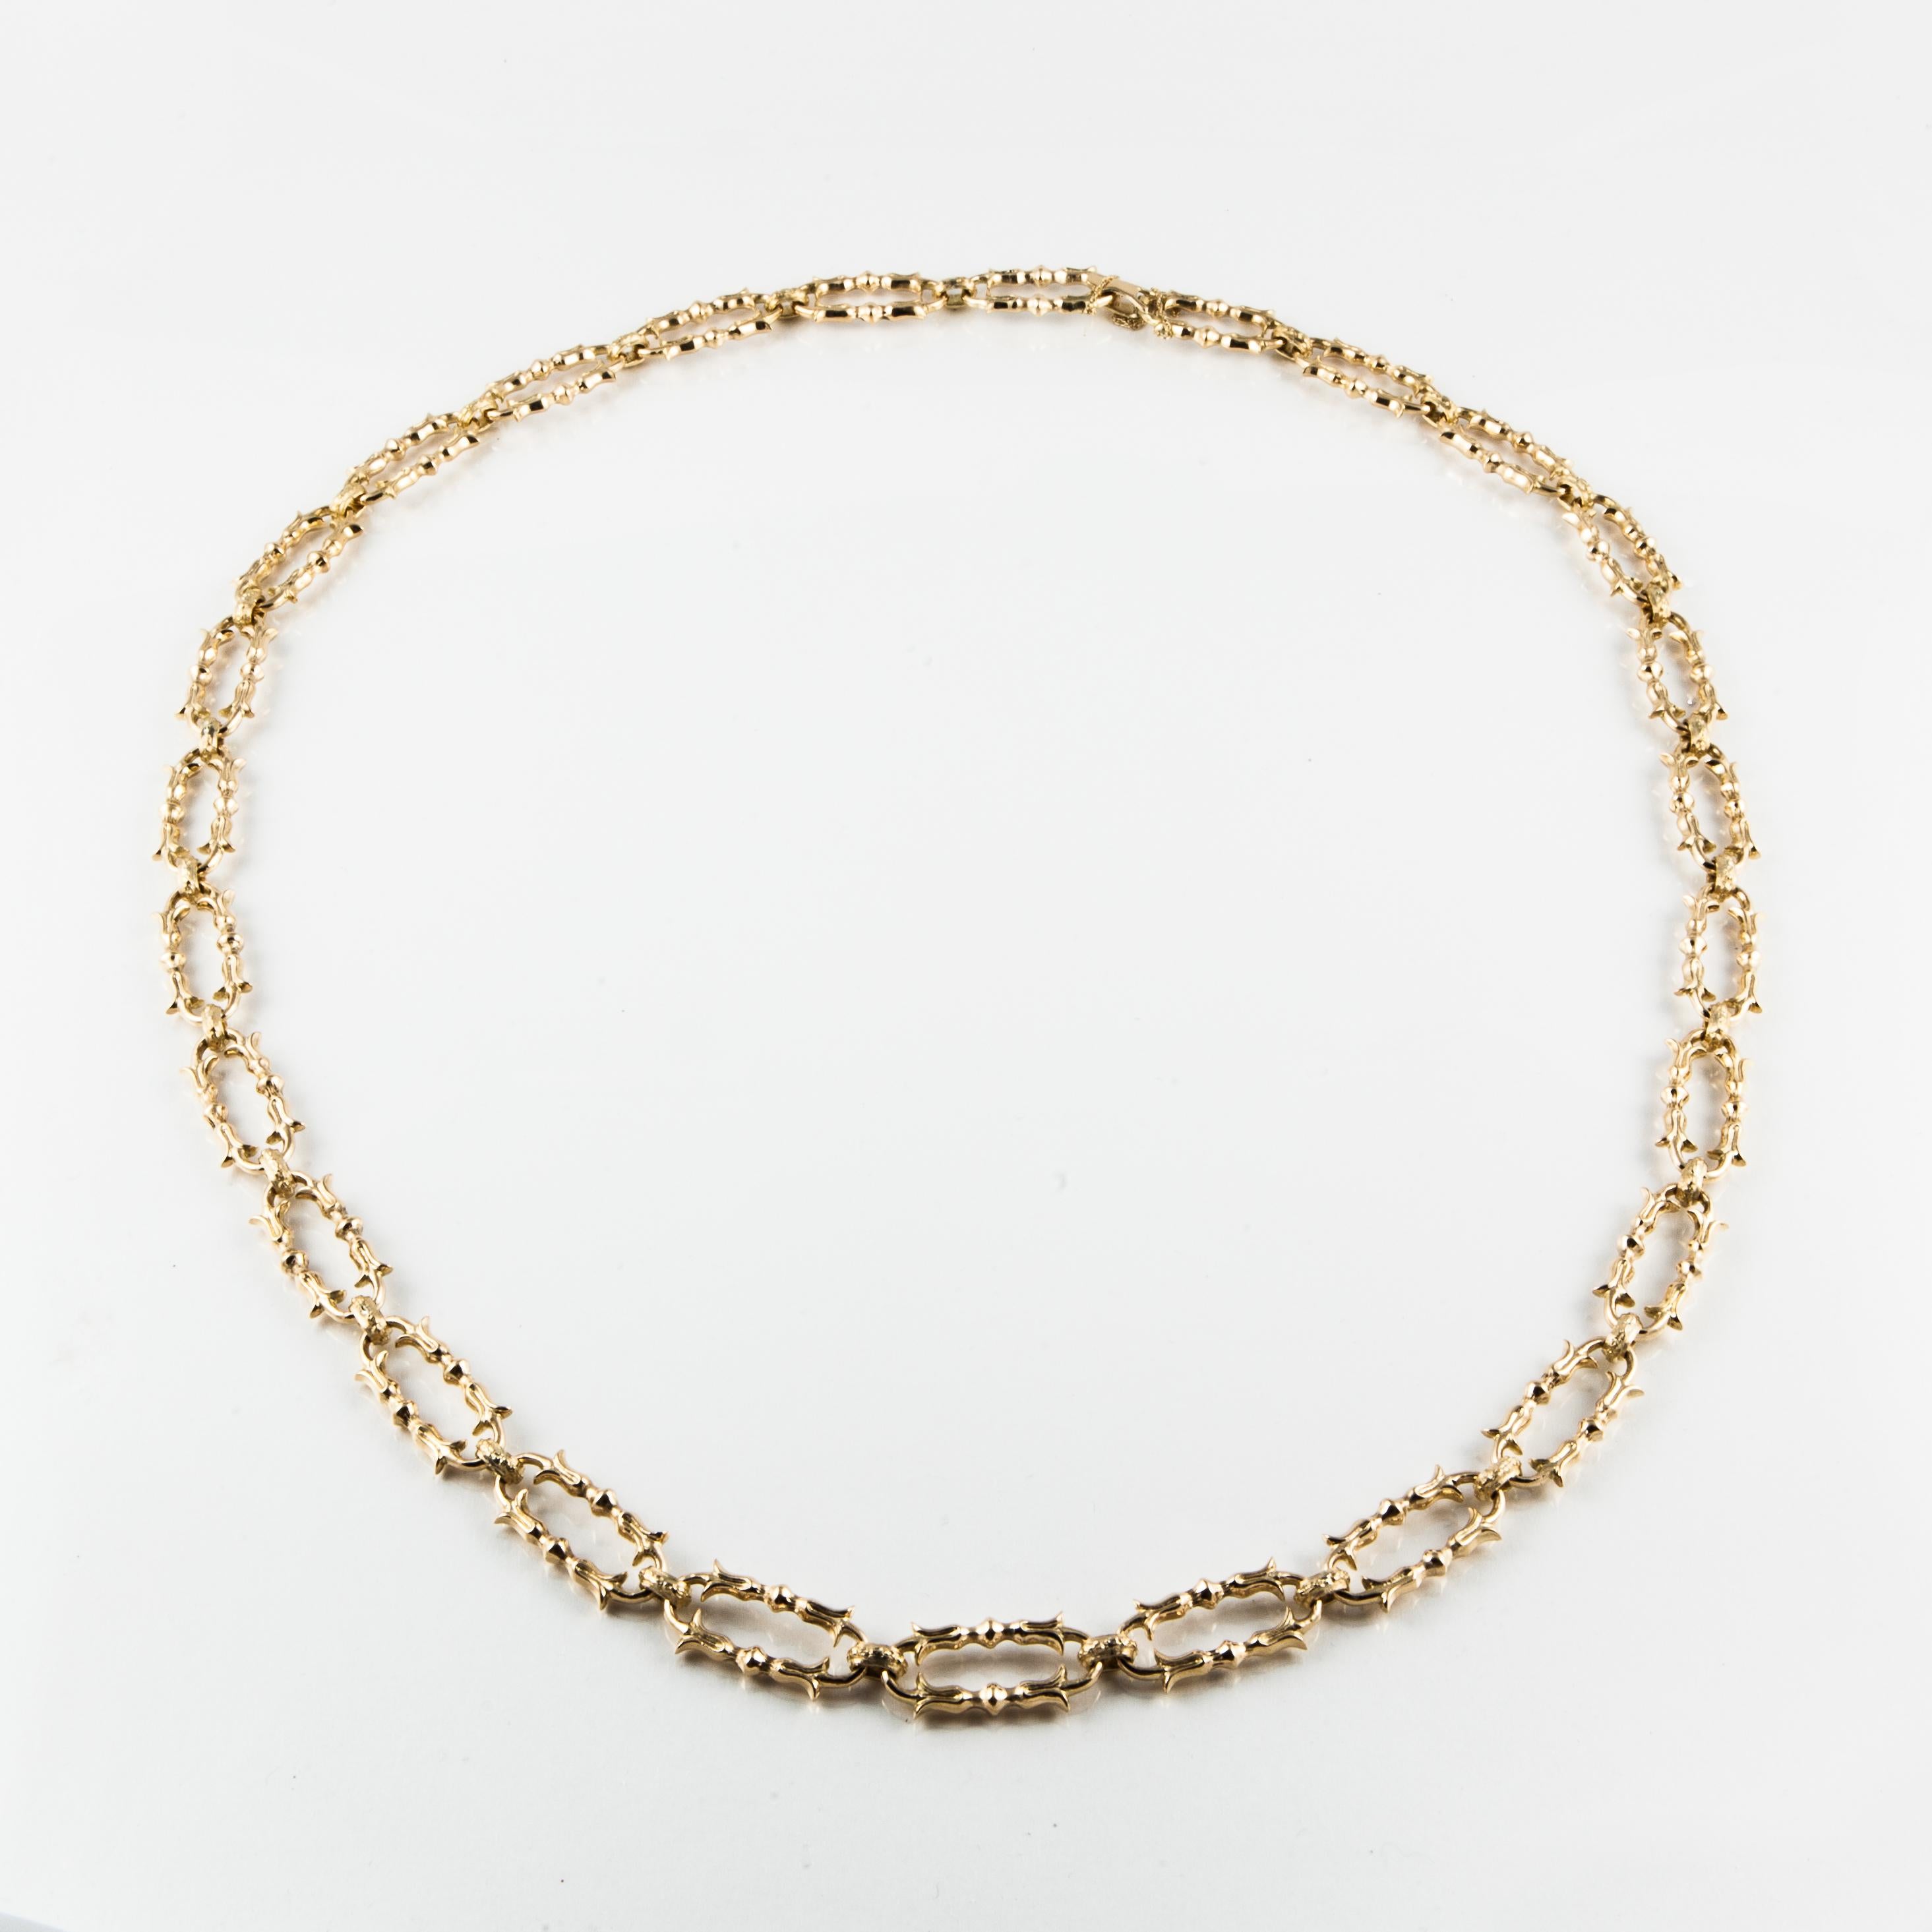 Halskette aus 18 Karat Gelbgold mit ausgefallenen Gliedern.  Die gesamte Halskette ist 32 Zoll lang und jedes Glied ist 1/2 Zoll breit und 1 1/8 Zoll lang.  Hat einen faltbaren Verschluss.